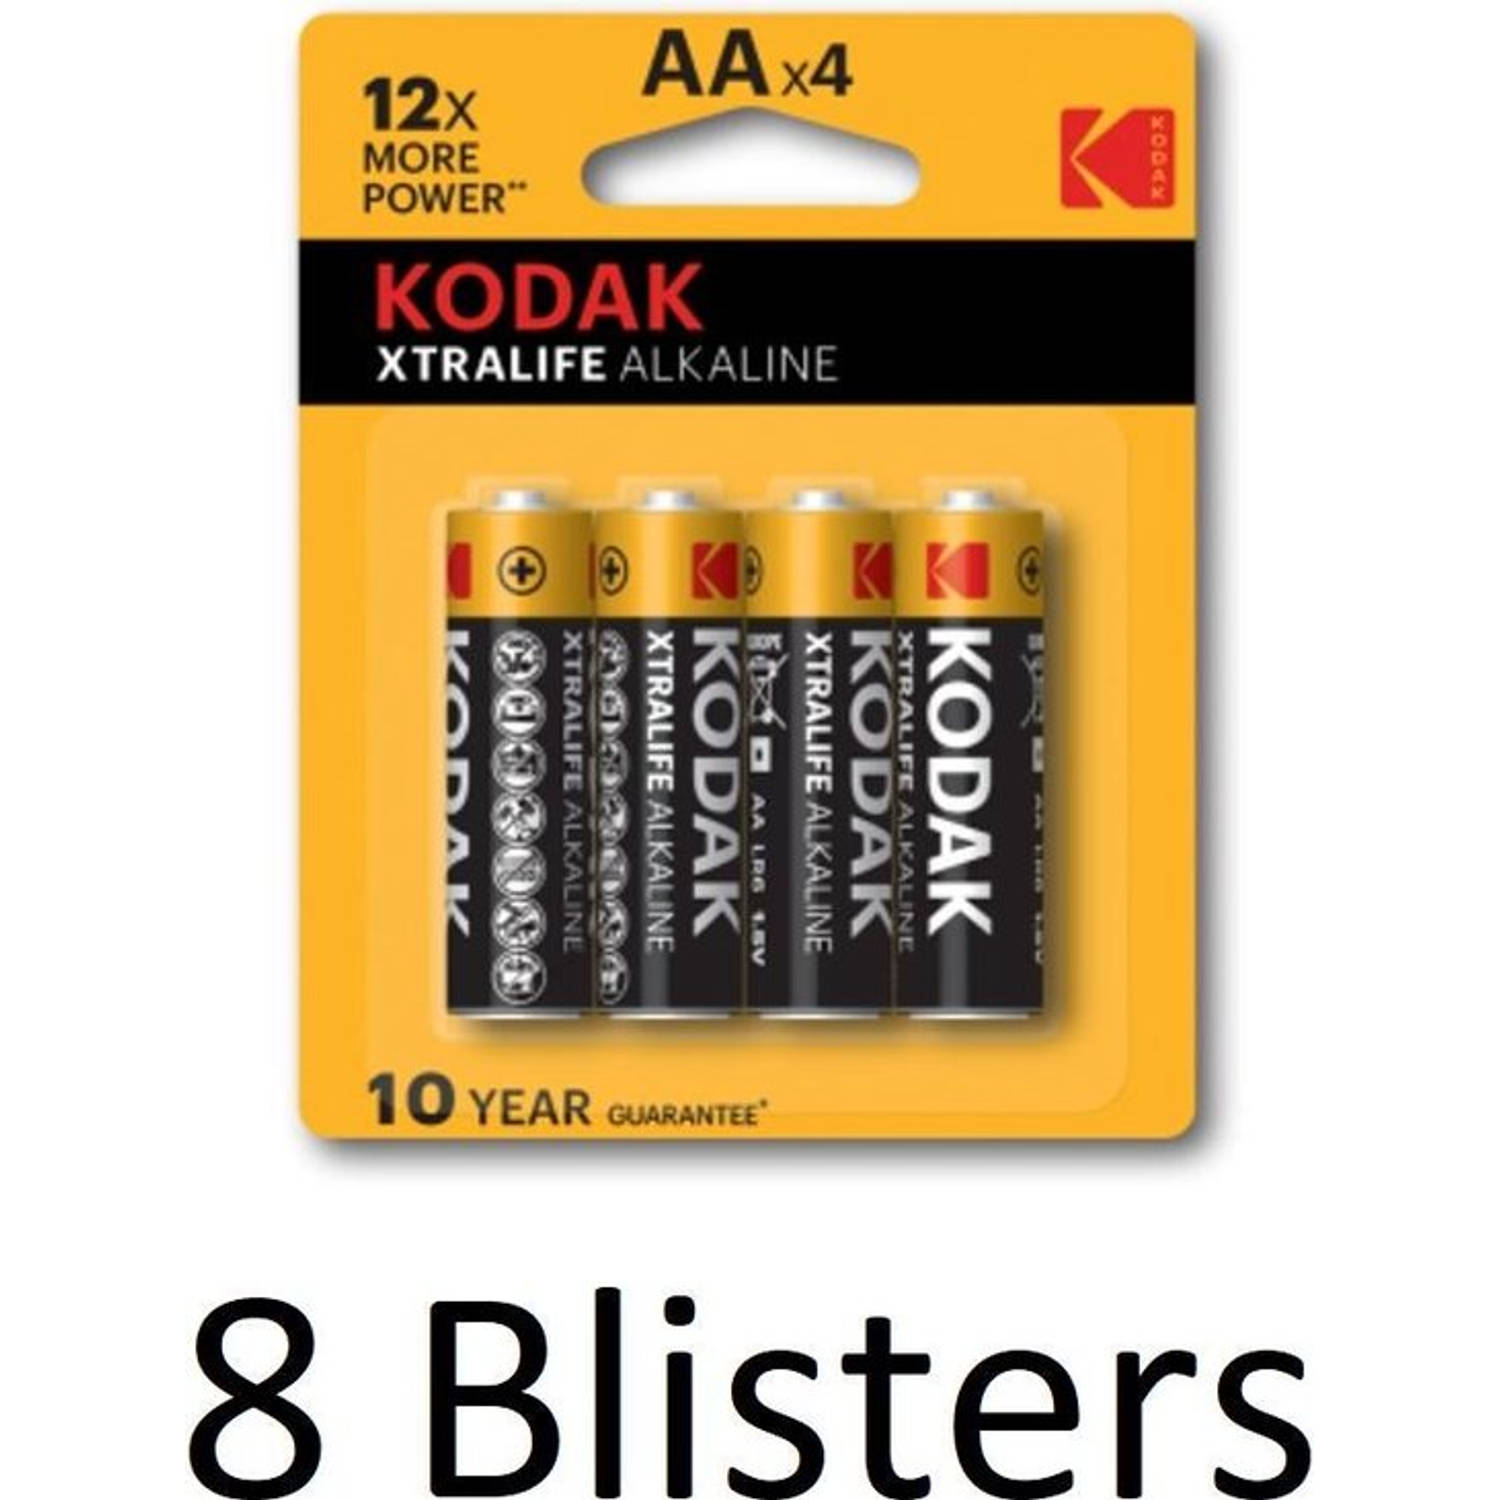 32 Stuks (8 Blisters a 4 st) Kodak Xtralife AA Alkaline Batterijen